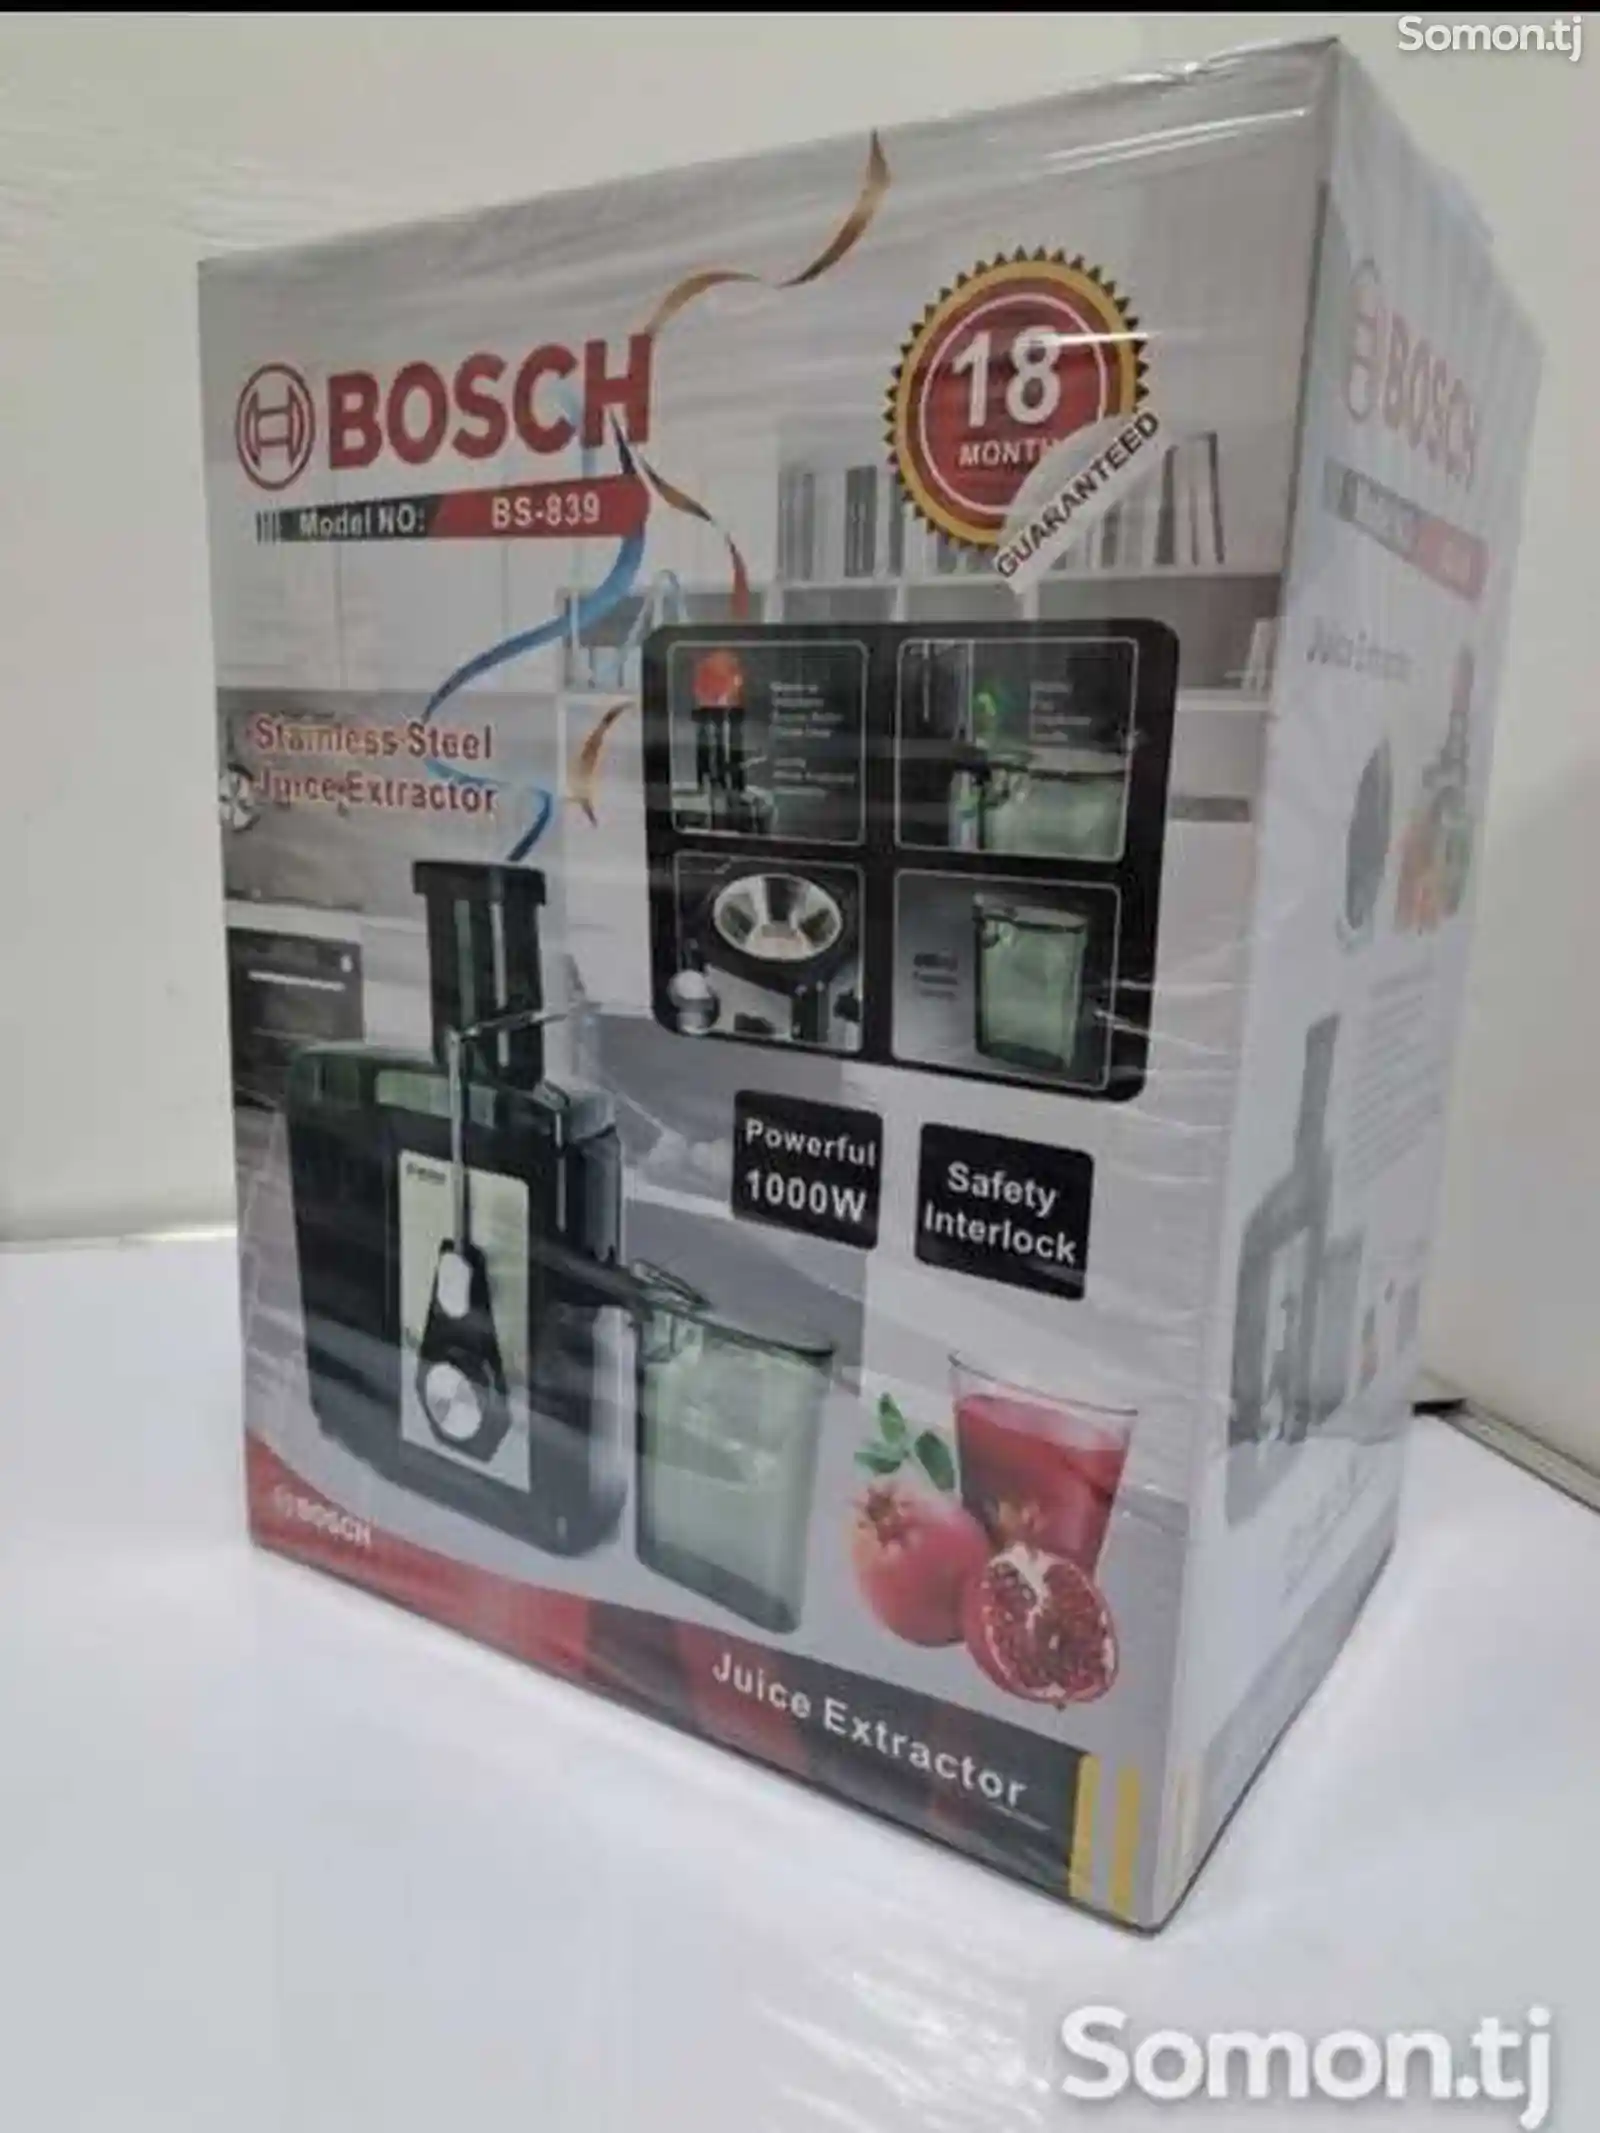 Соковыжималка Bosch-2